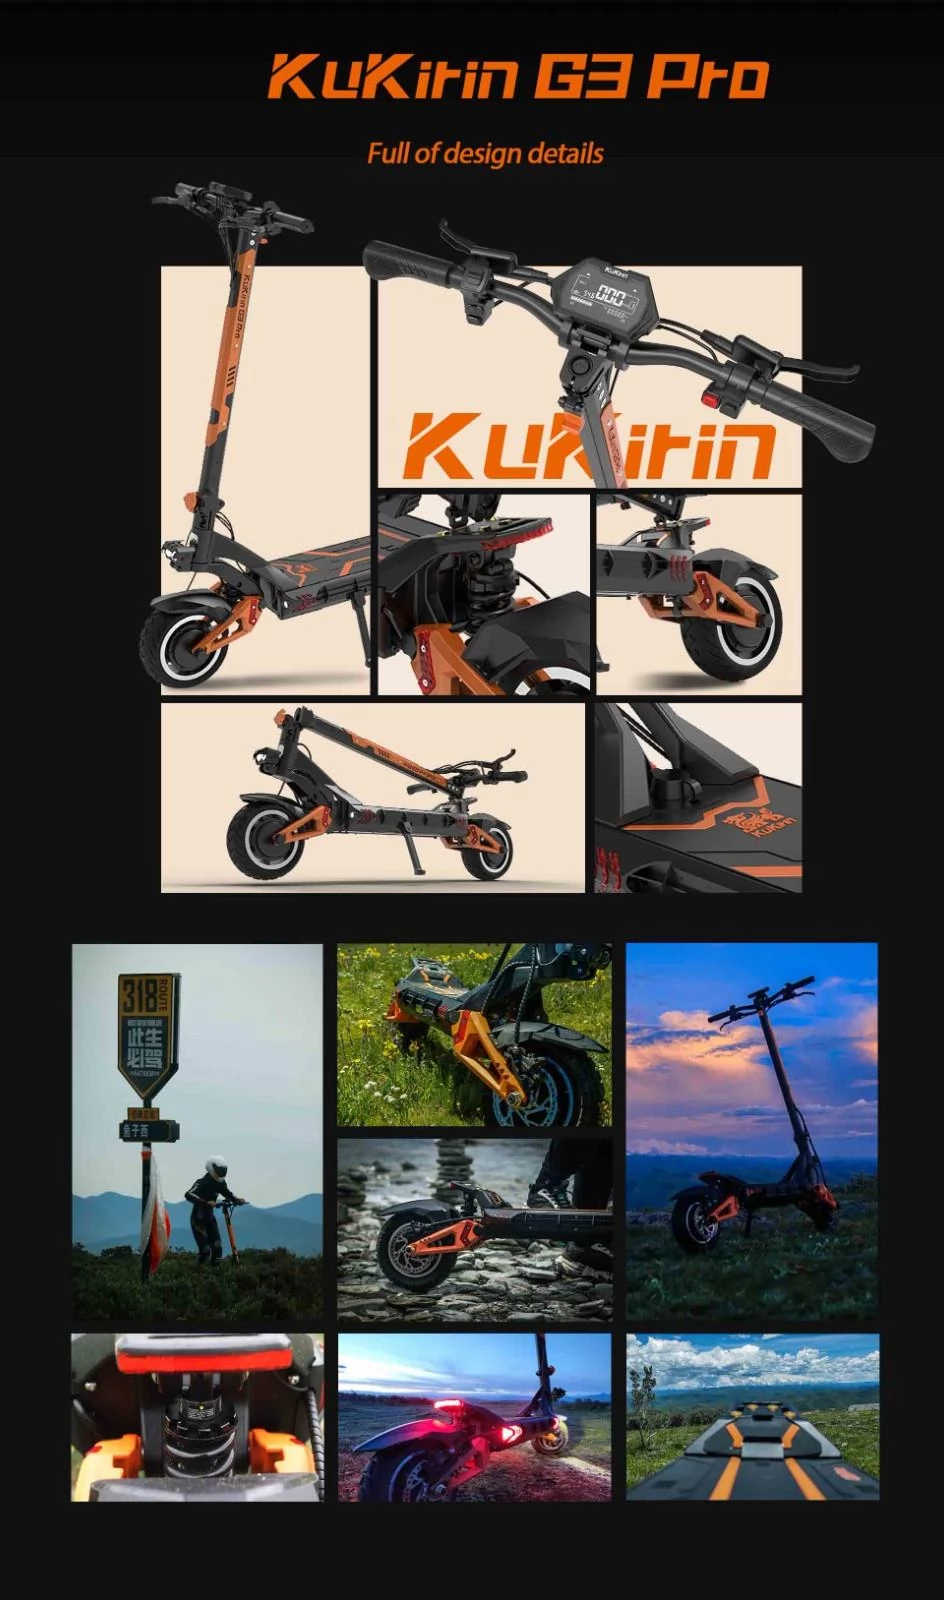 KuKirin G3 Pro Off-Road Elektrische Scooter - 1200W*2 Krachtige Motoren & 23.2Ah Batterij